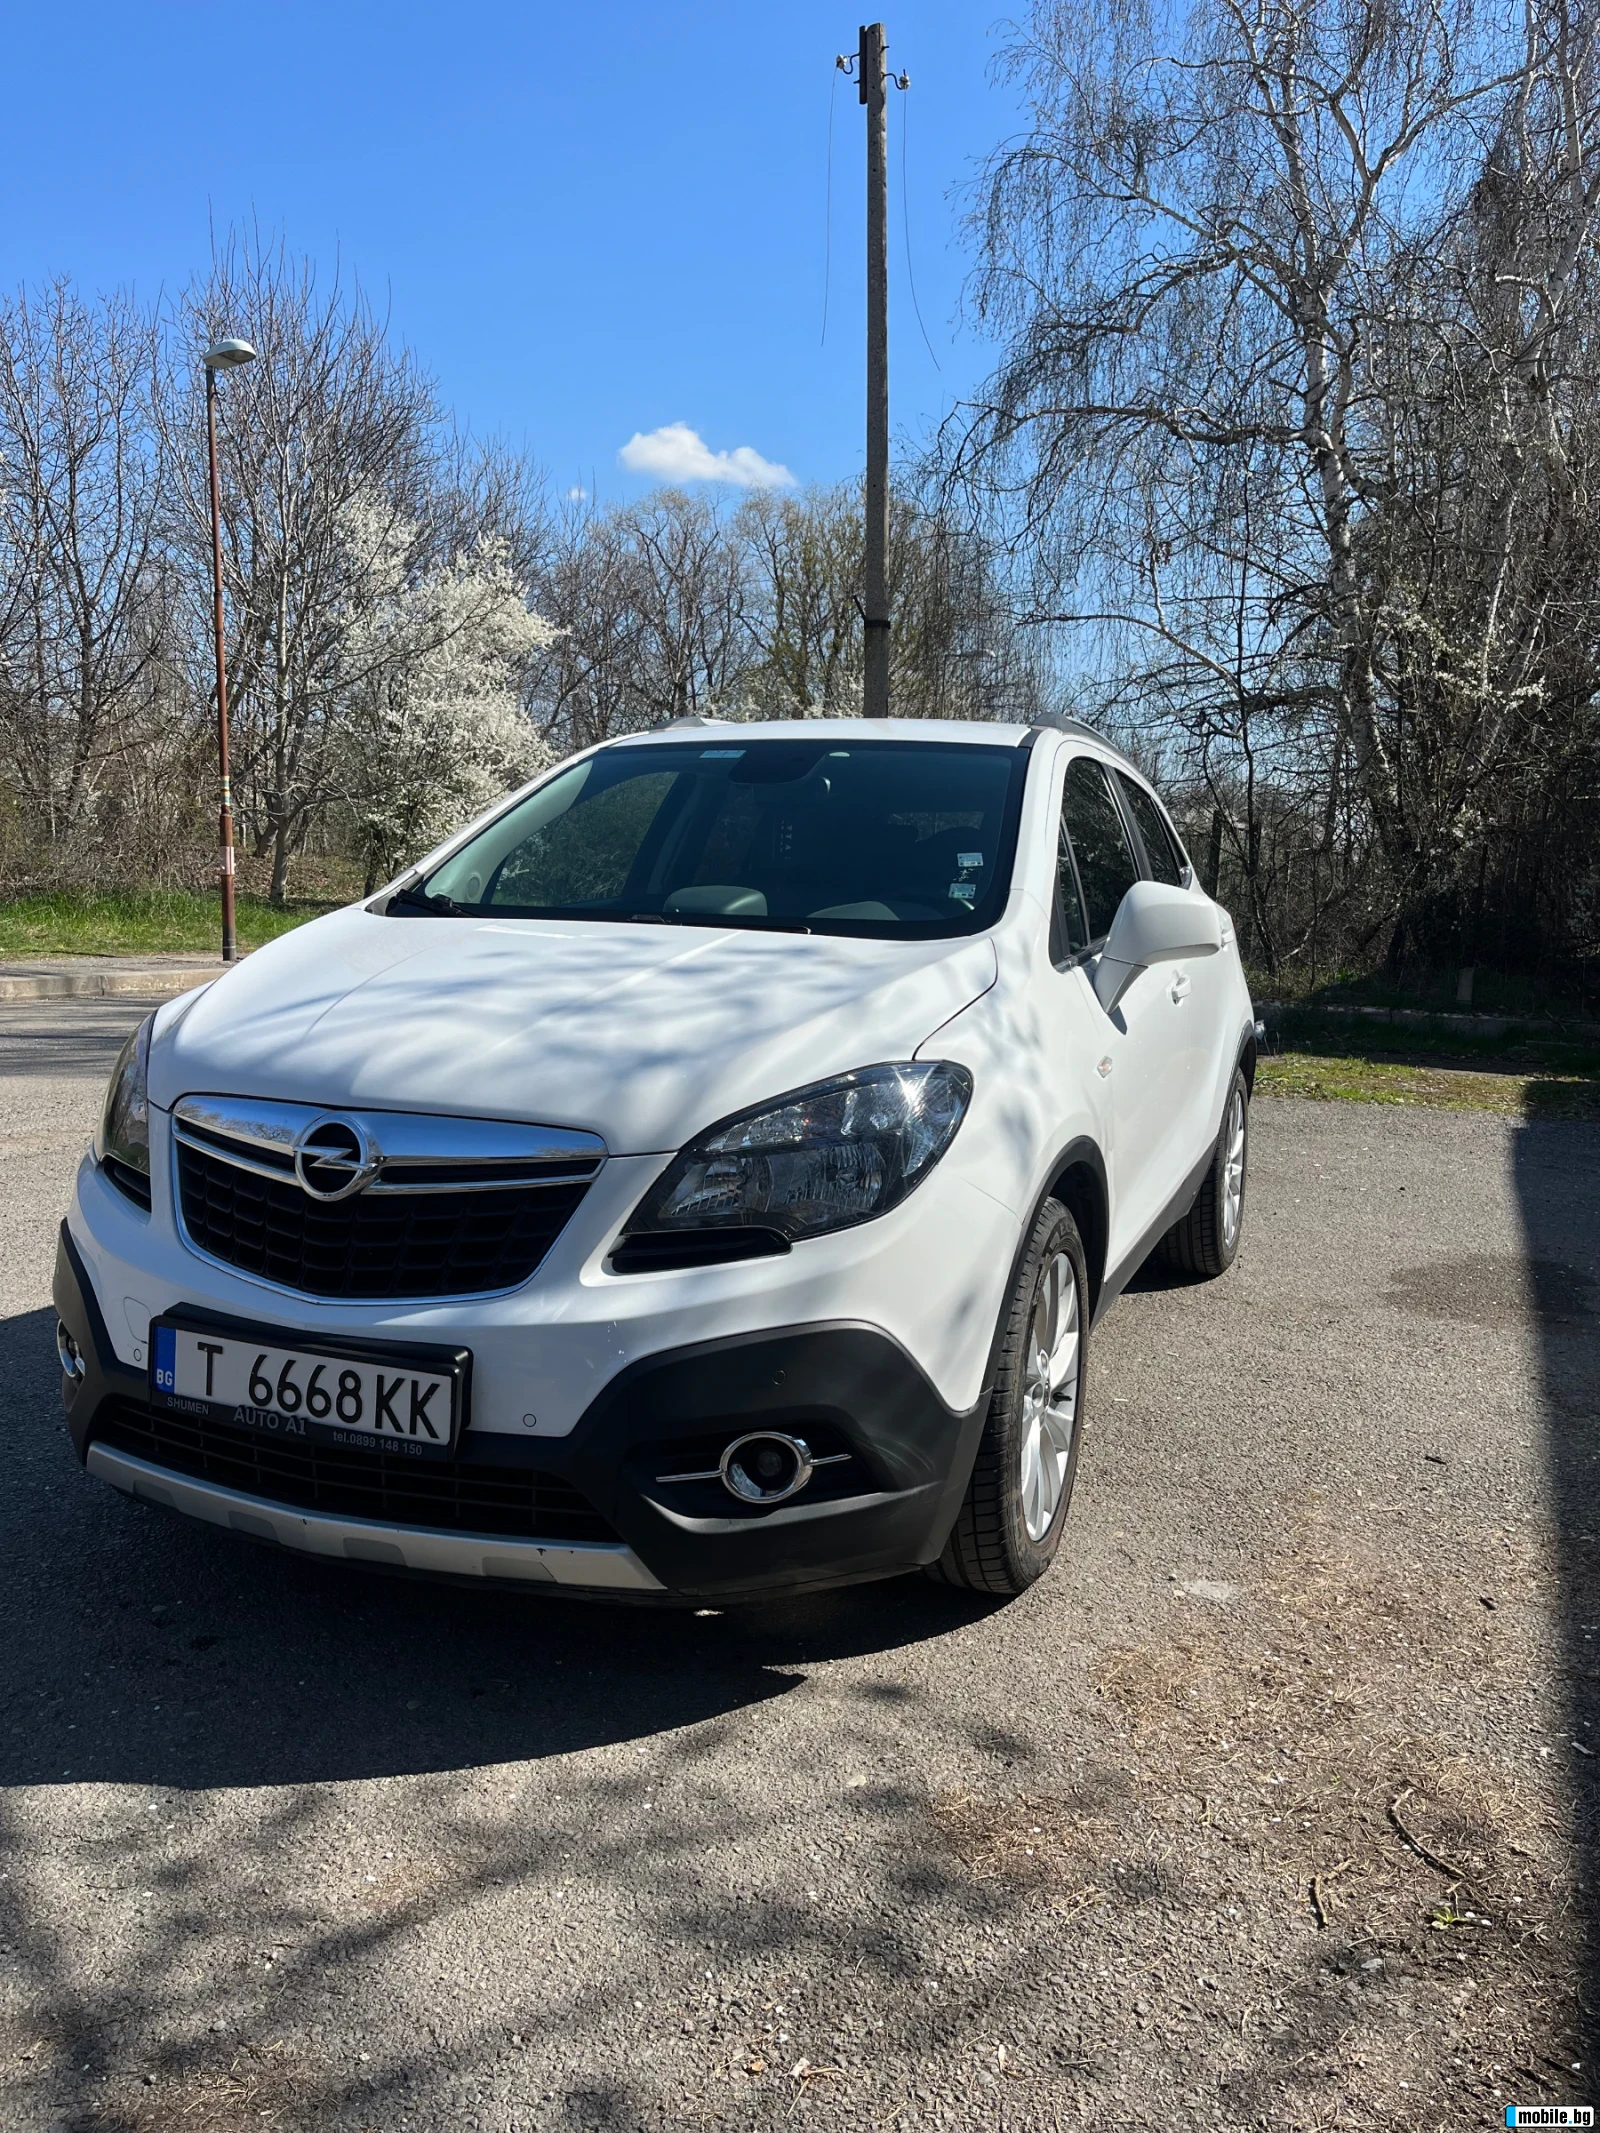 Opel Mokka 1.4T | Mobile.bg   1